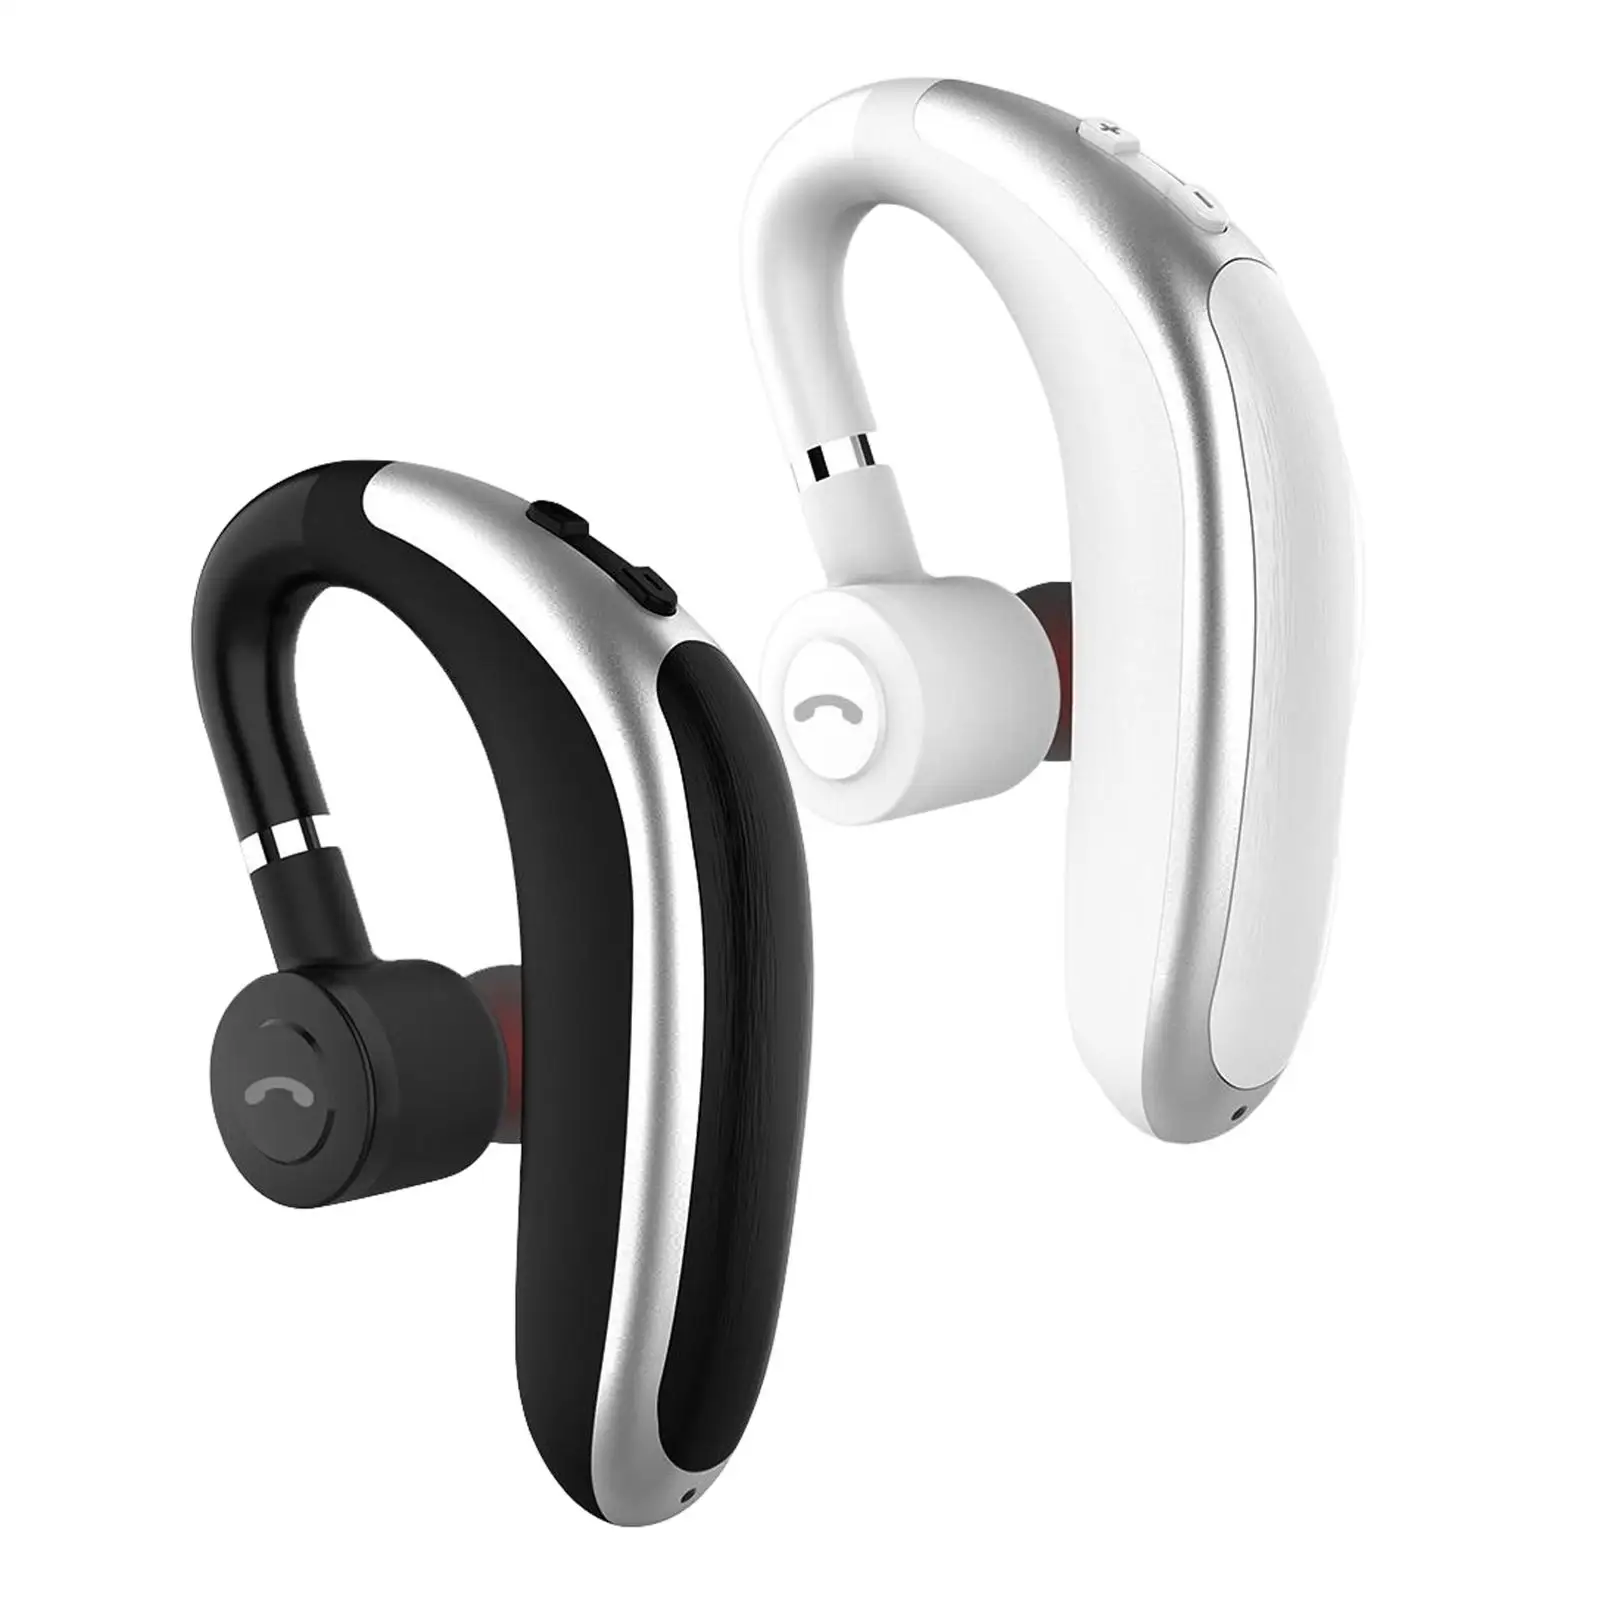 Single Ear Hook Bluetooth Headset Stereo Hands Free Portable Earphone in Ear Earbud Bluetooth Earpiece for Sports Driving Office